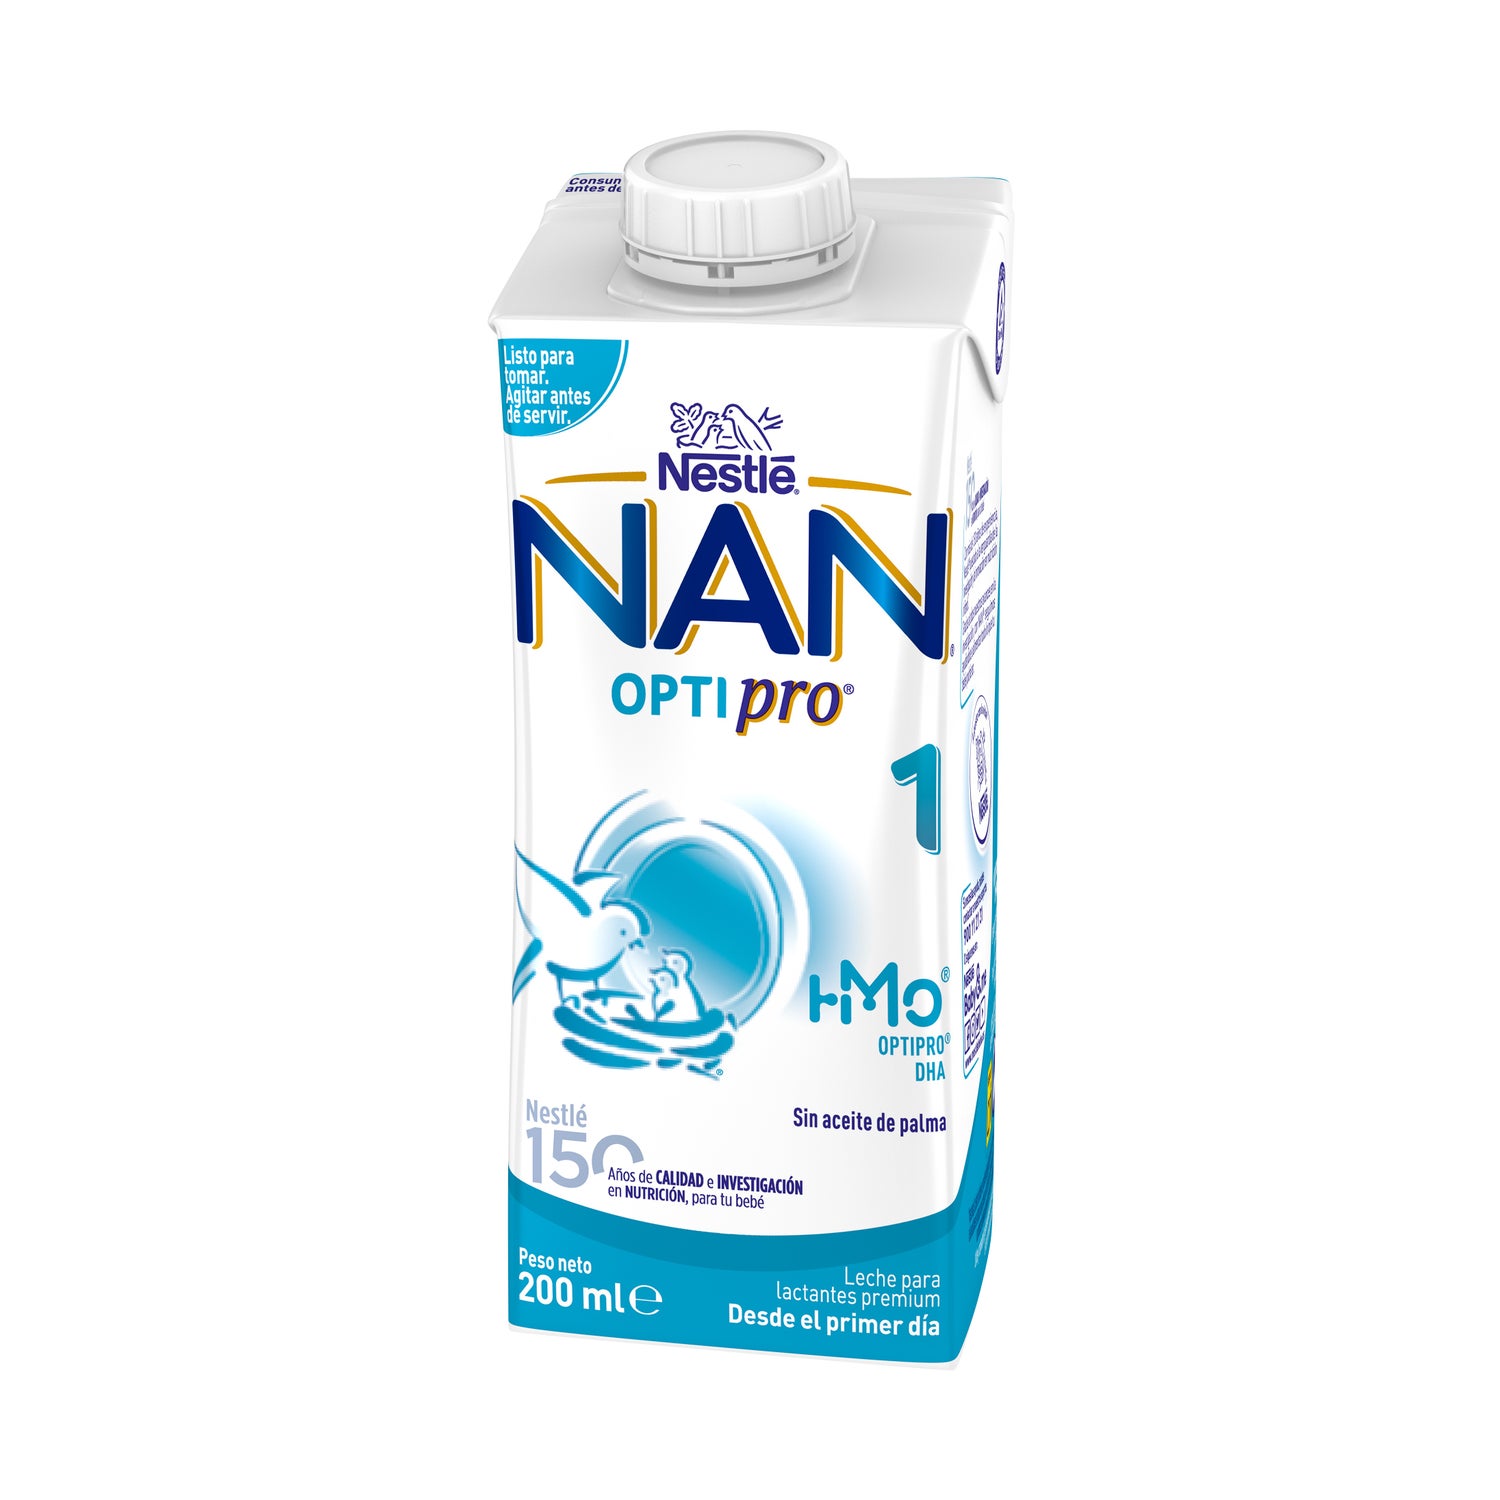 Nan 1 optipro Alimentación completa del lactante, desde el primer día